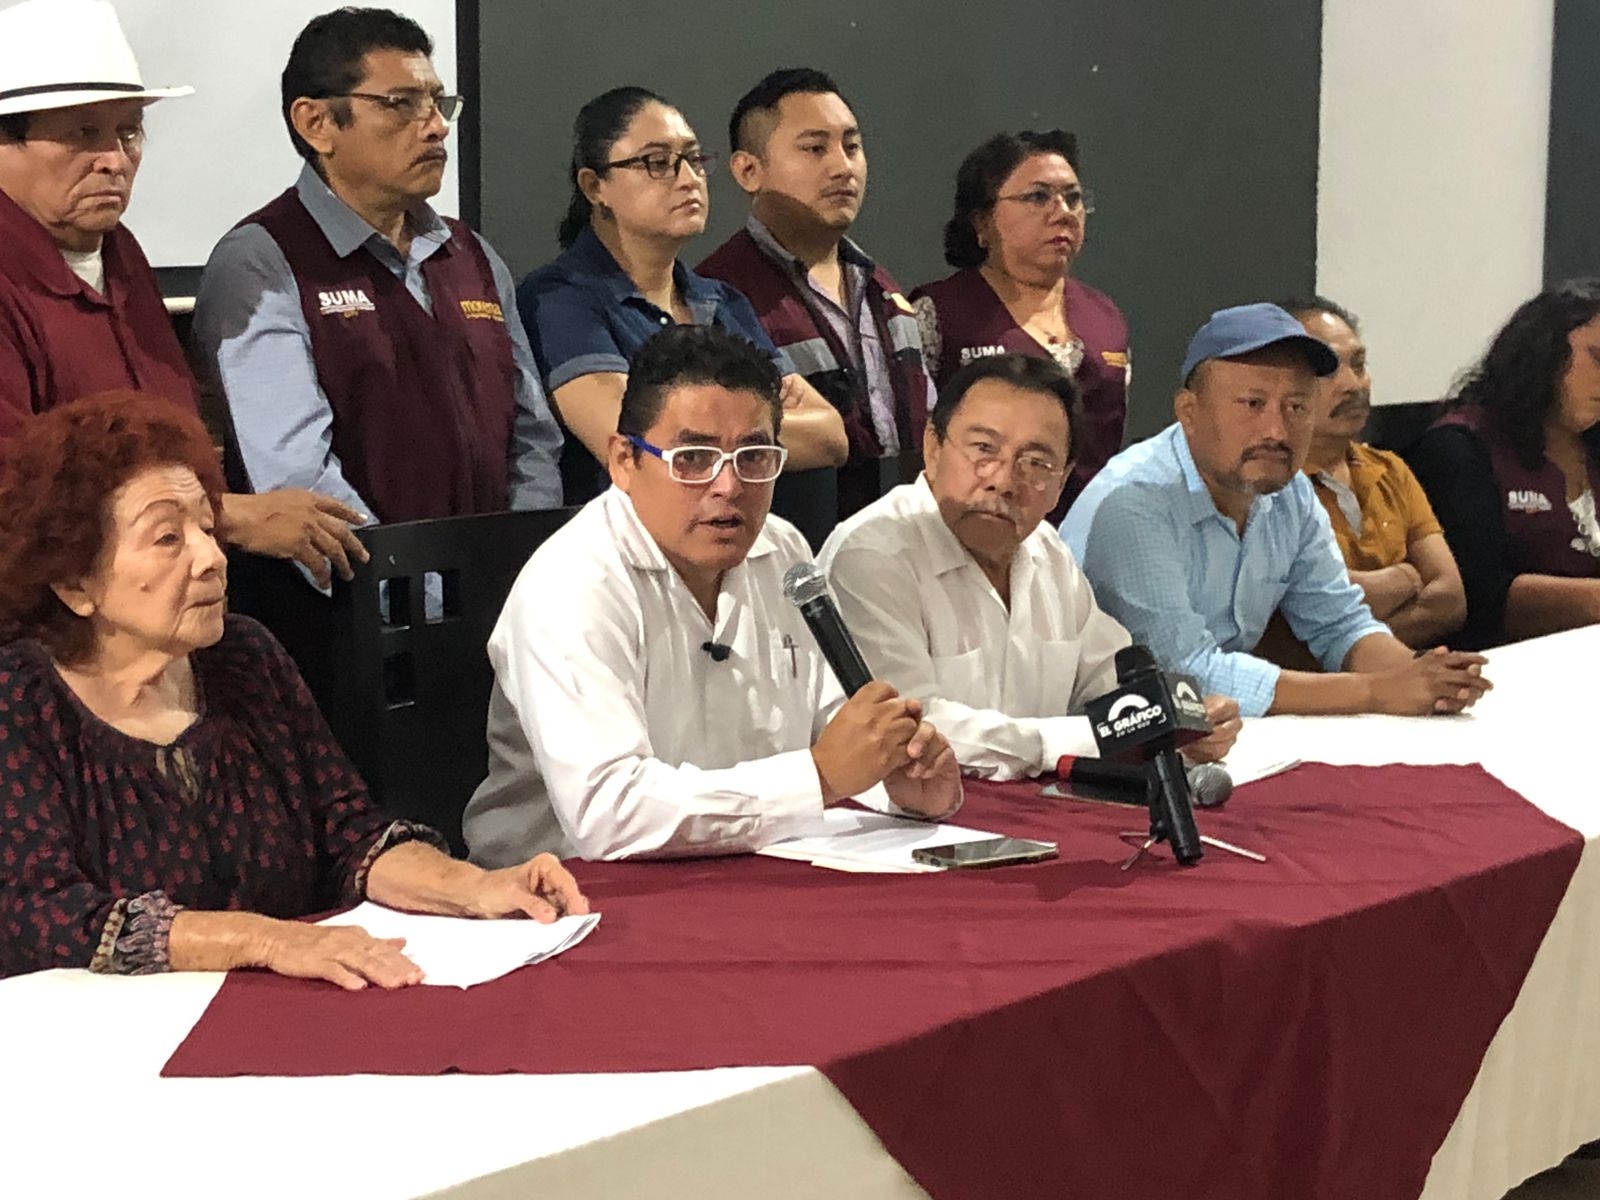 Rommel Pacheco se niega a dejar su precandidatura, revela líder fundador de Morena en Yucatán